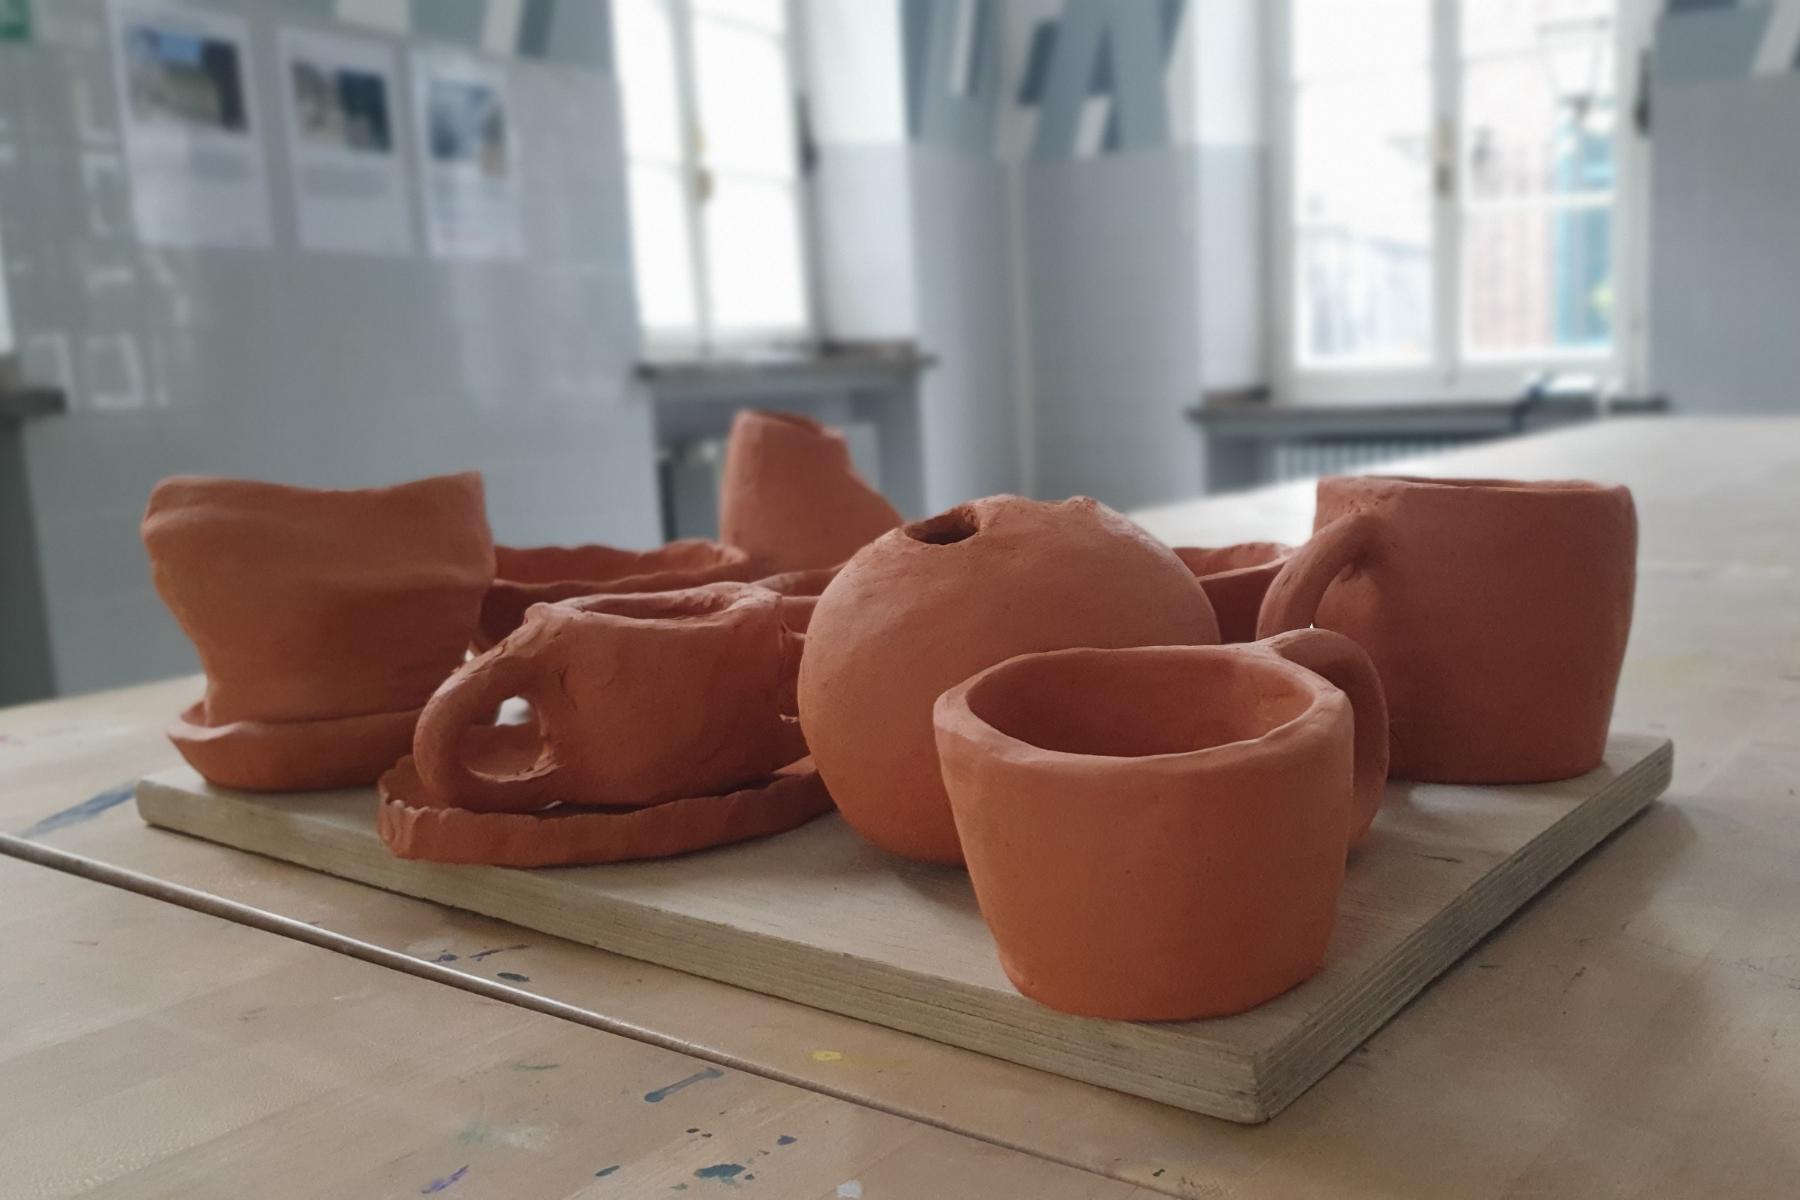 Keramikkurs im Hetjendsmuseum